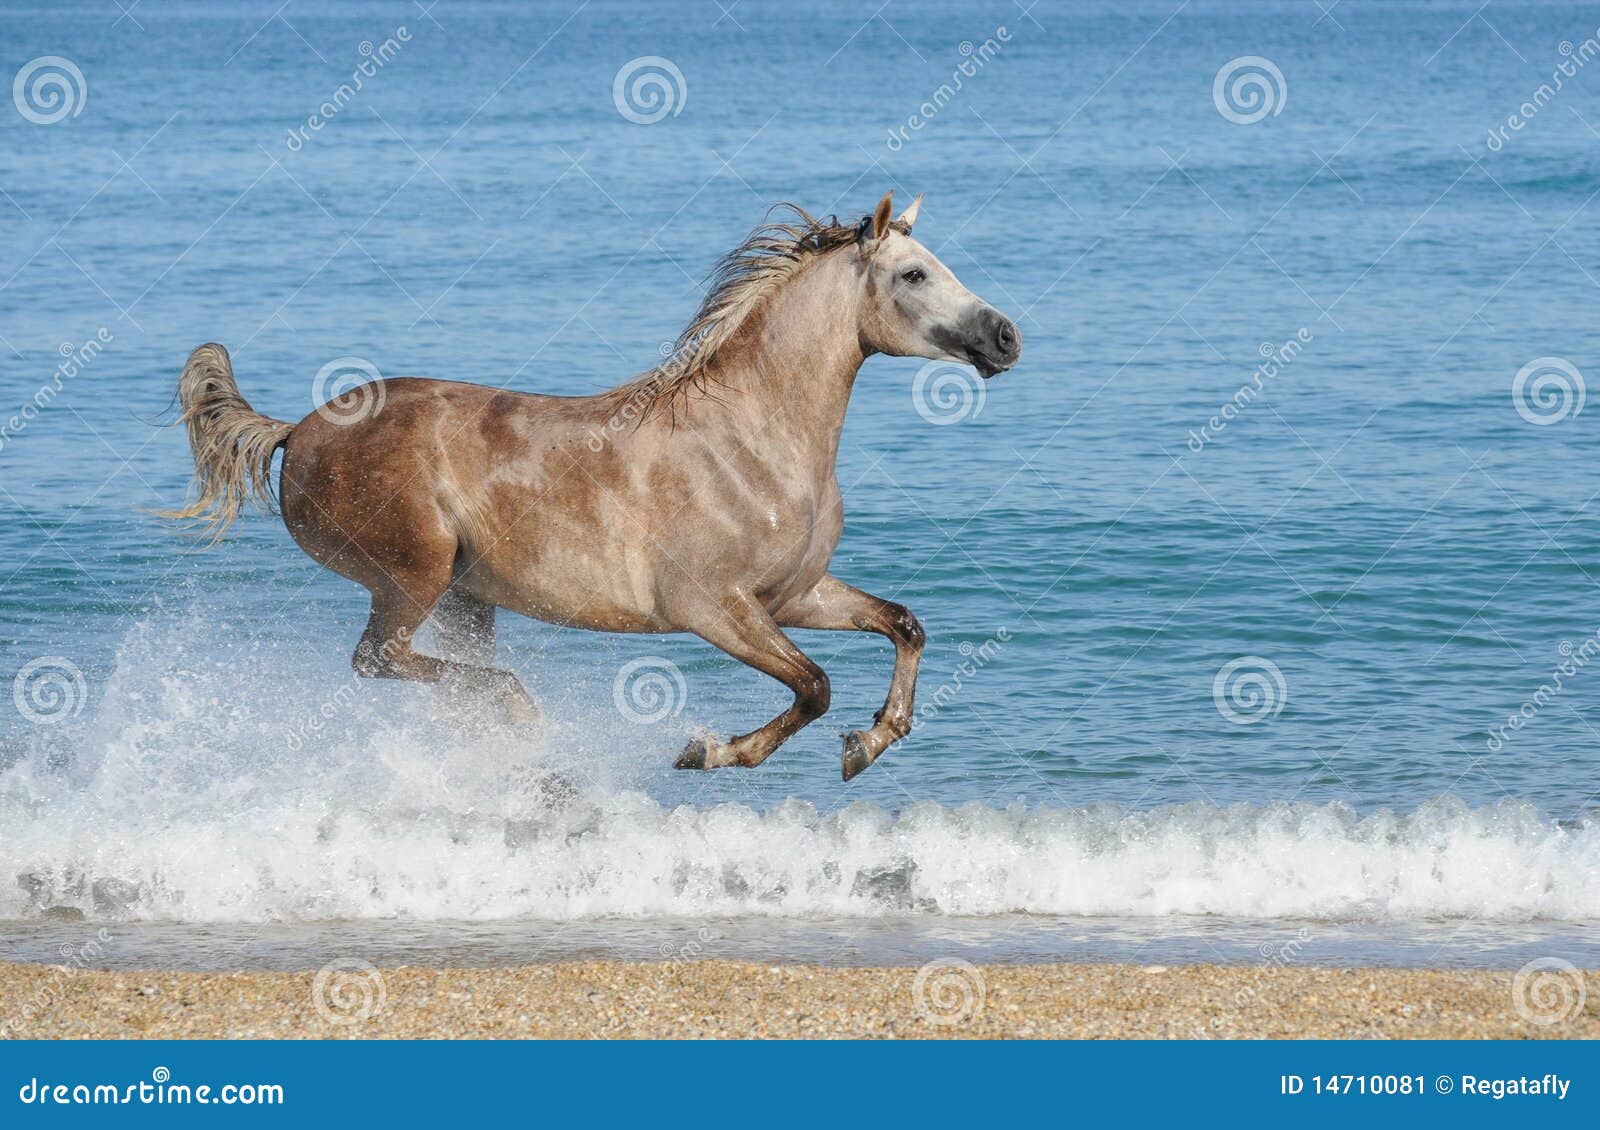 Jovem mostra pulando com cavalo - Fotos de arquivo #14932093